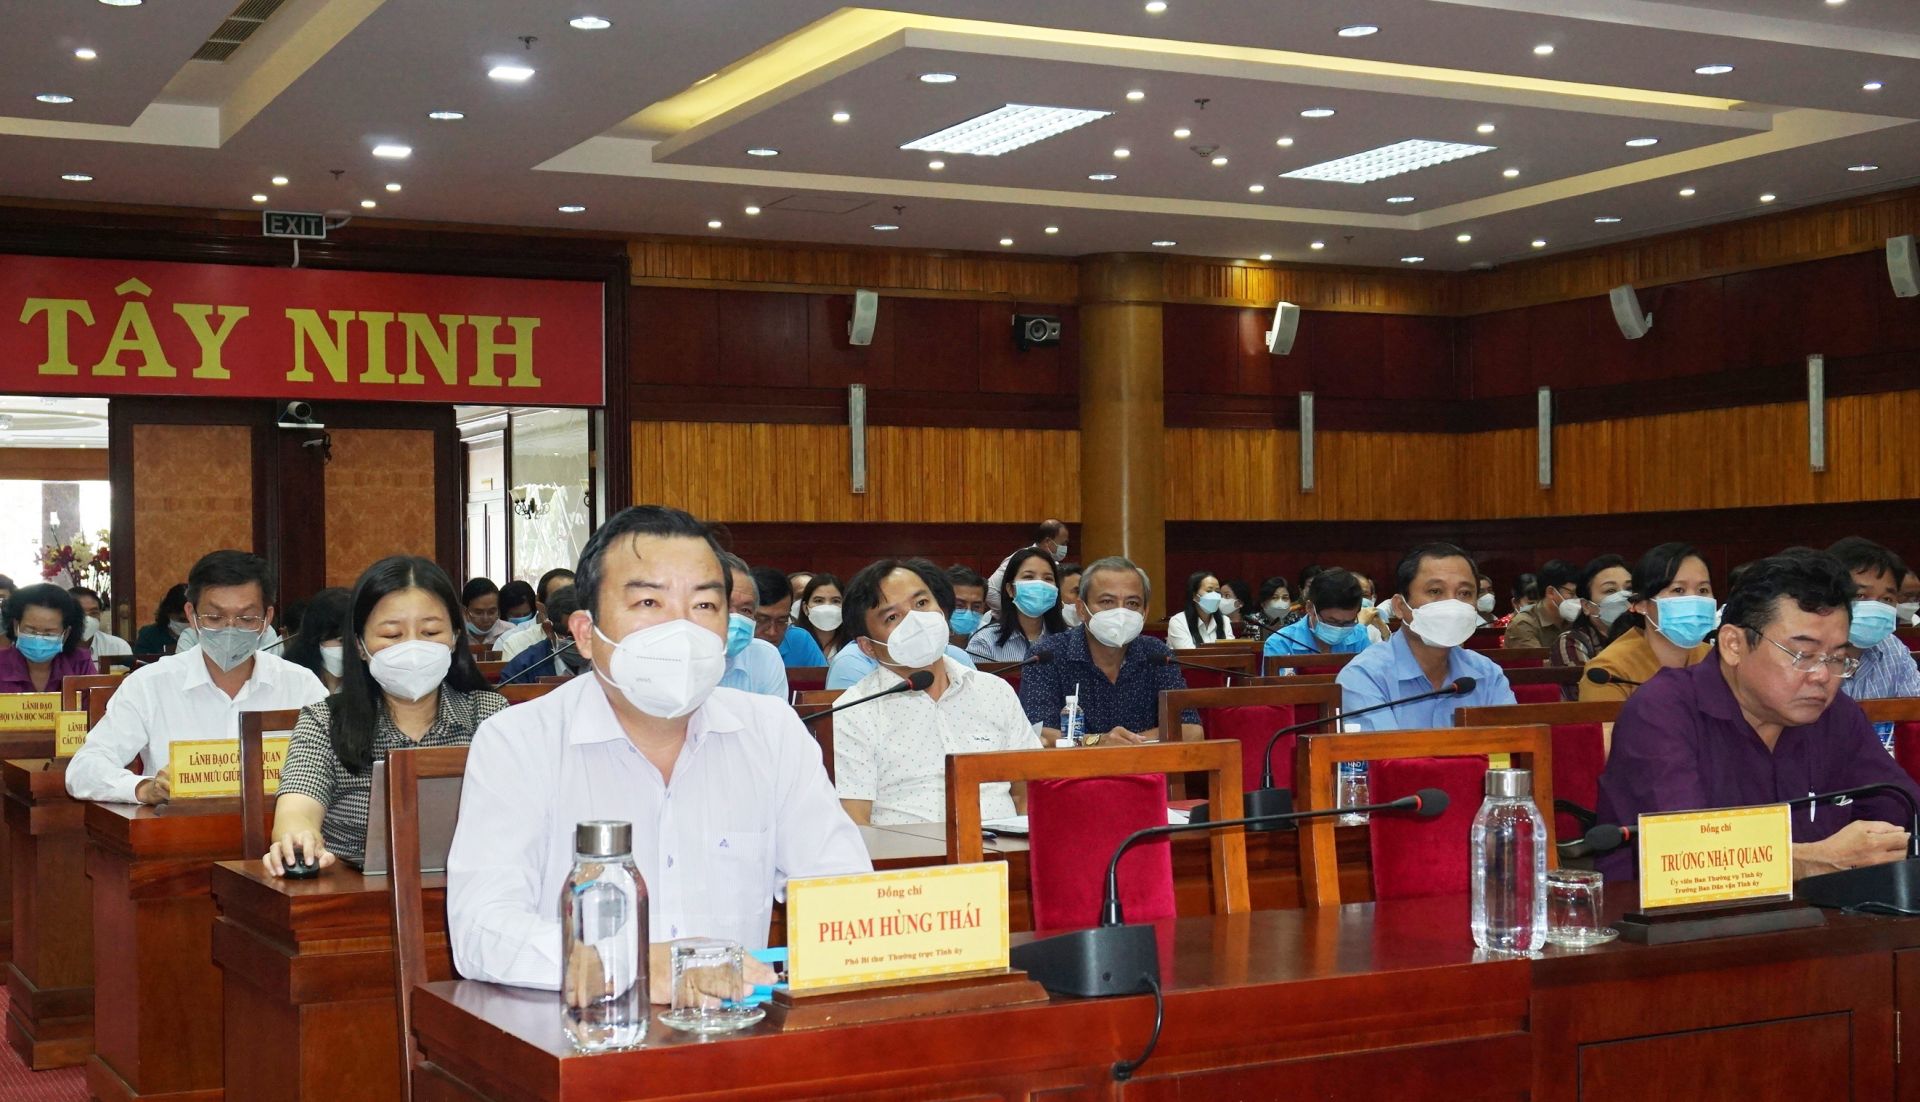 Điểm báo in Tây Ninh ngày 21.05.2022